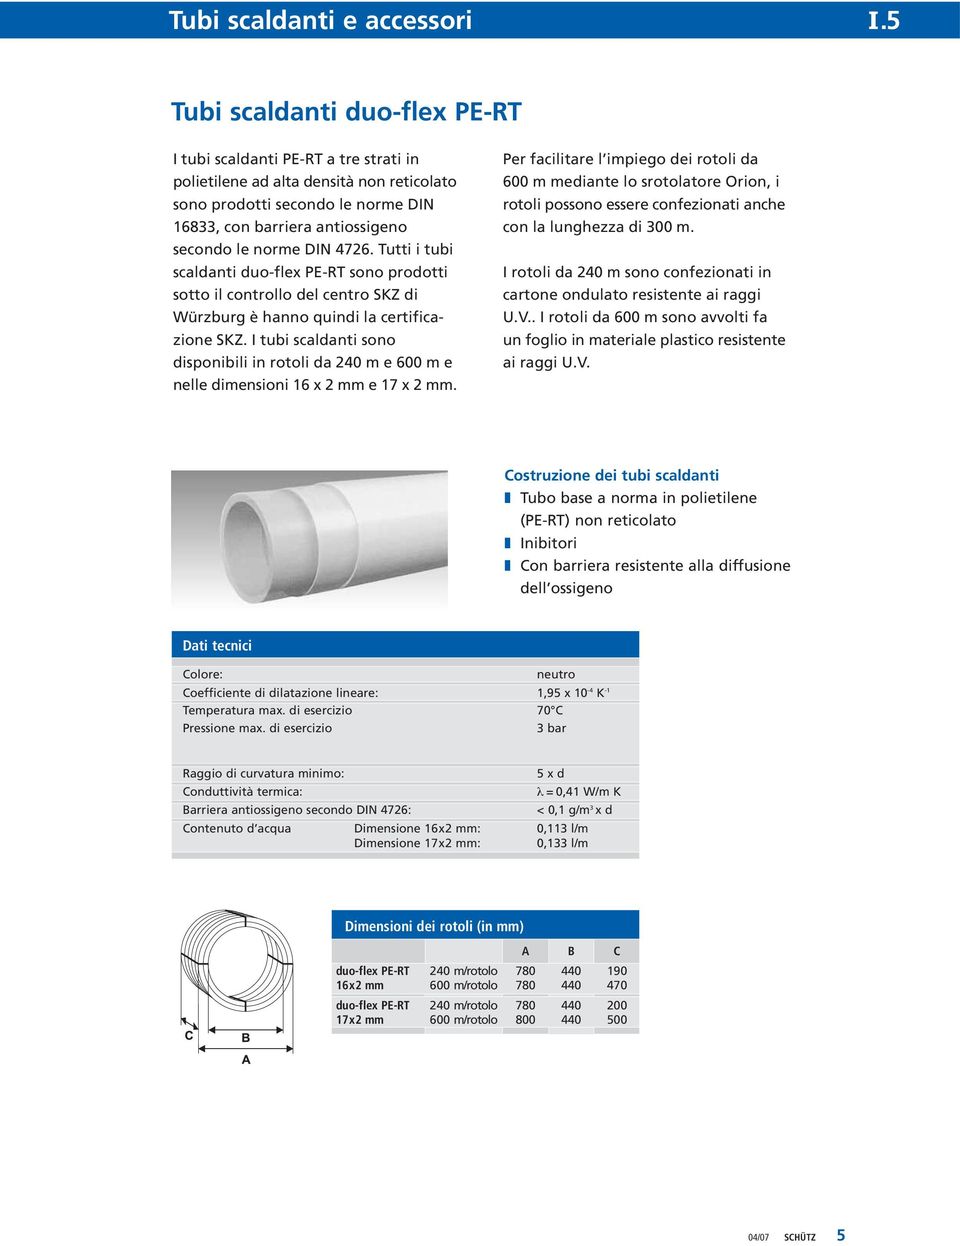 I tubi scaldanti sono disponibili in rotoli da 240 m e 600 m e nelle dimensioni 16 x 2 mm e 17 x 2 mm.